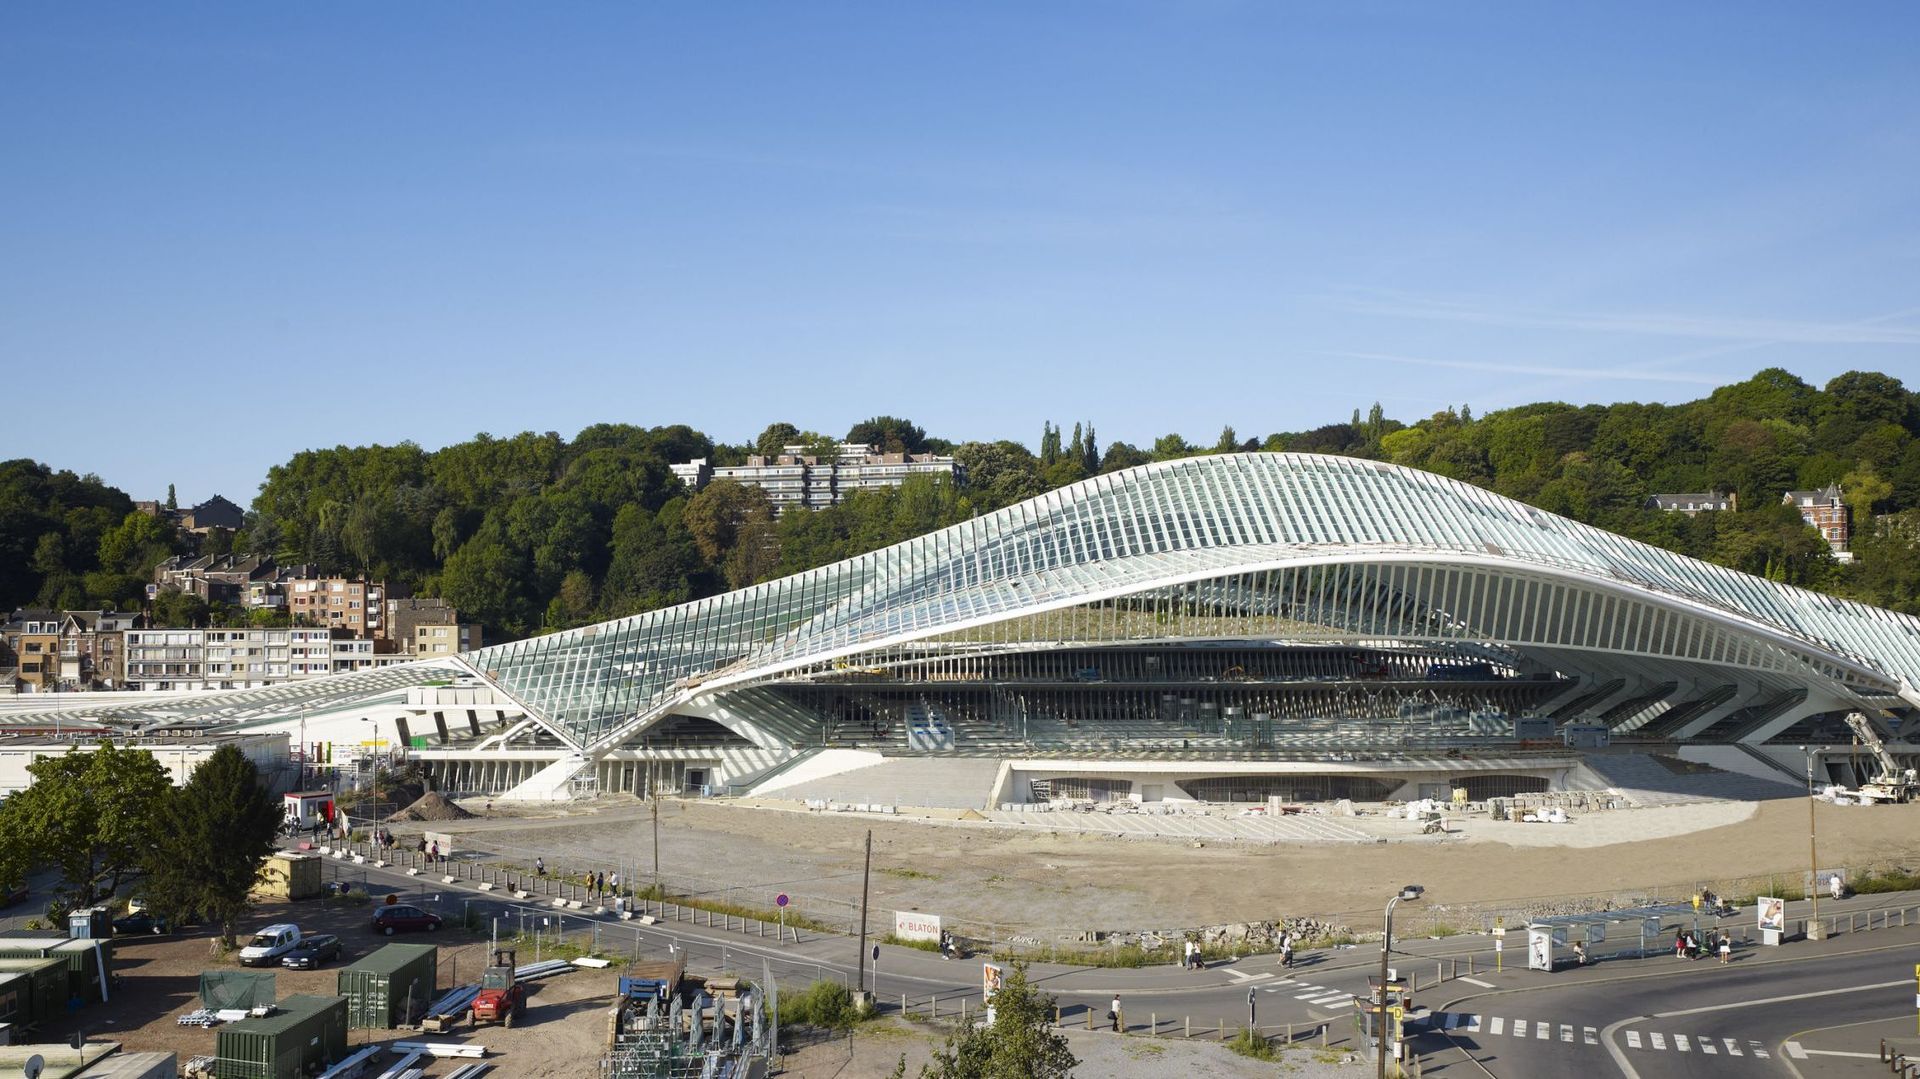 10 ans plus tard, la gare des Guillemins attire toujours au tant de touristes 